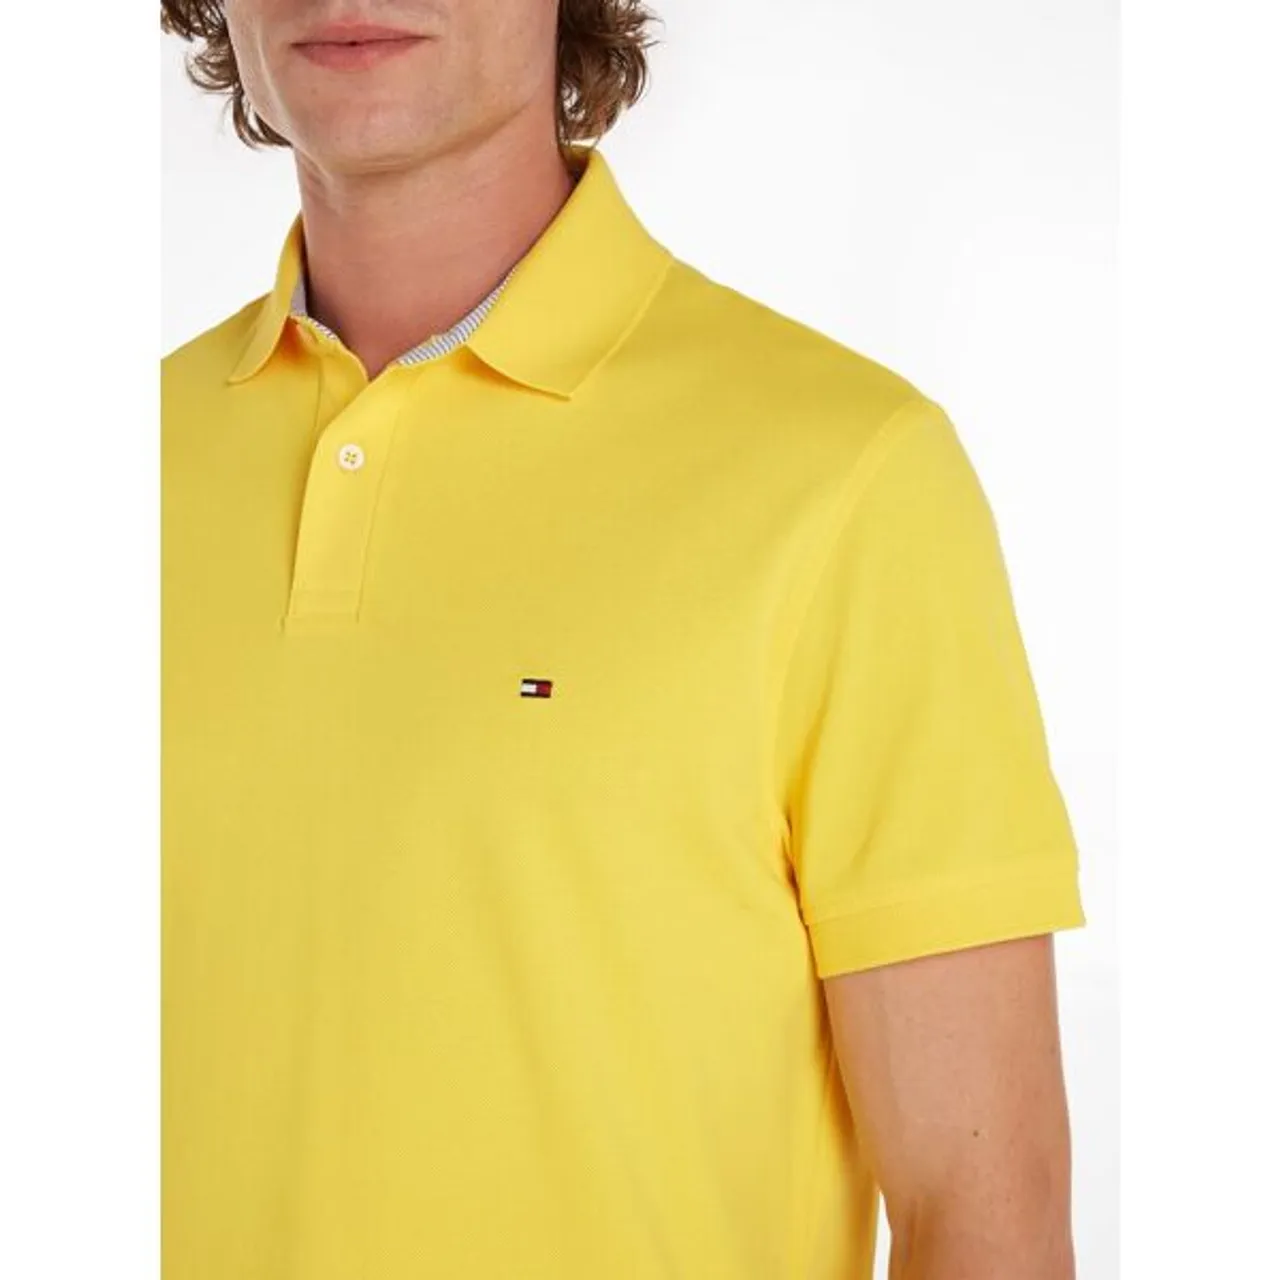 Poloshirt TOMMY HILFIGER "1985 REGULAR POLO" Gr. L, gelb (eureka yellow) Herren Shirts Kurzarm aus Piqué